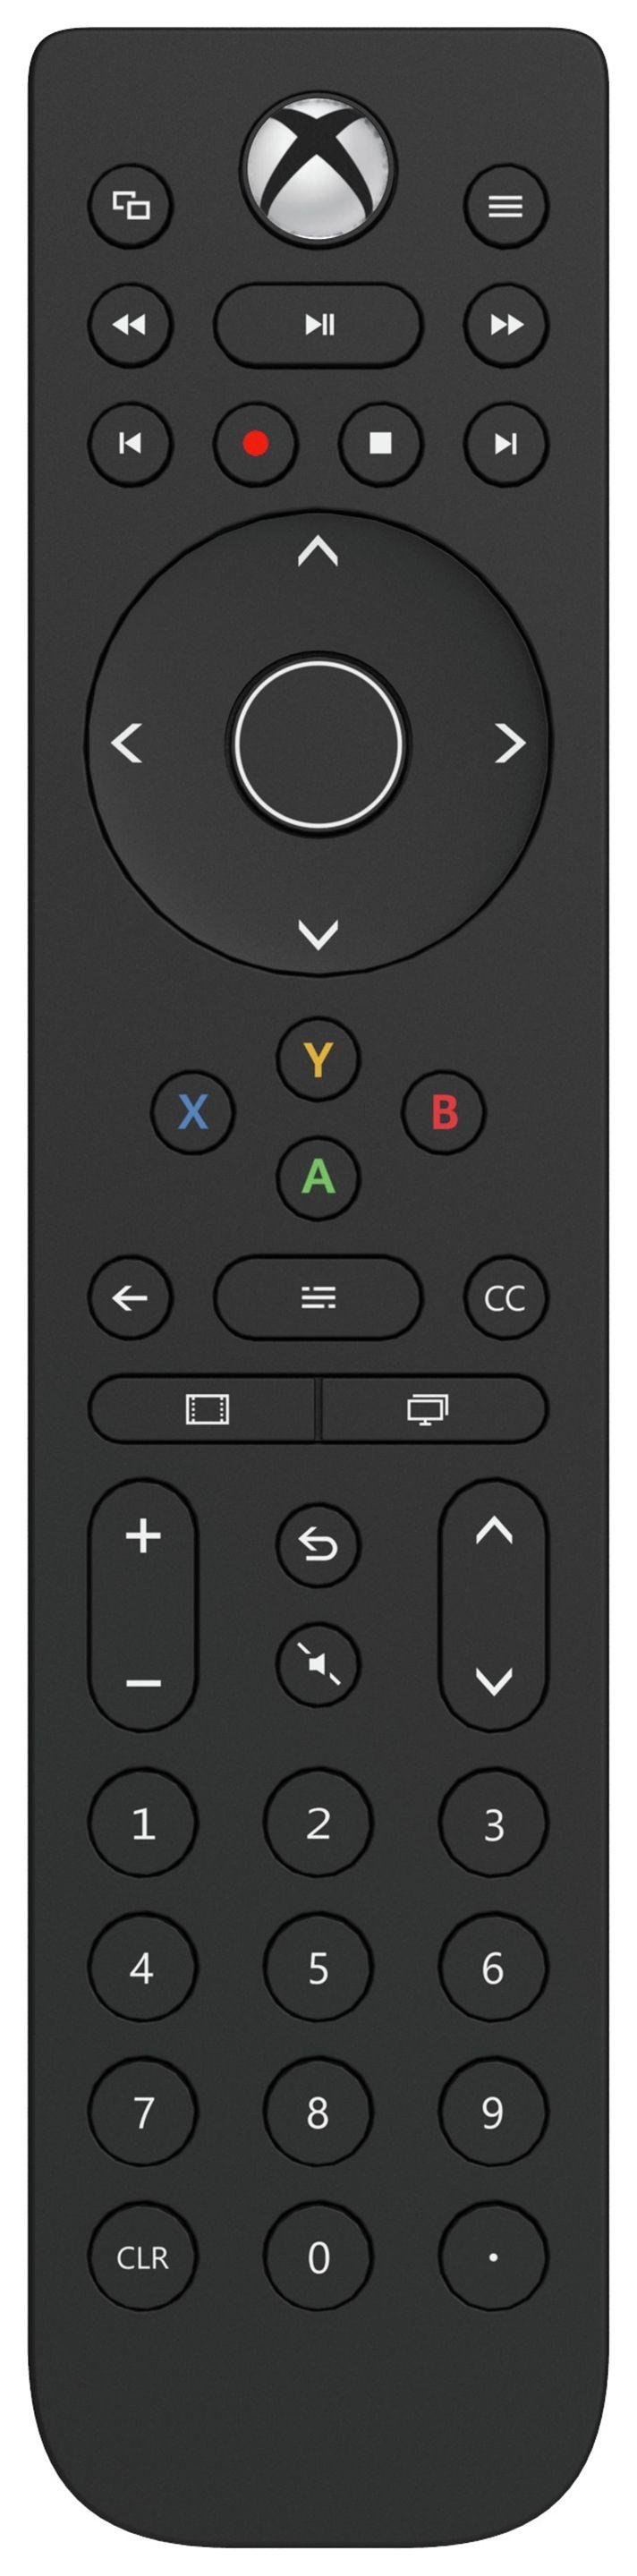 xbox one s remote control